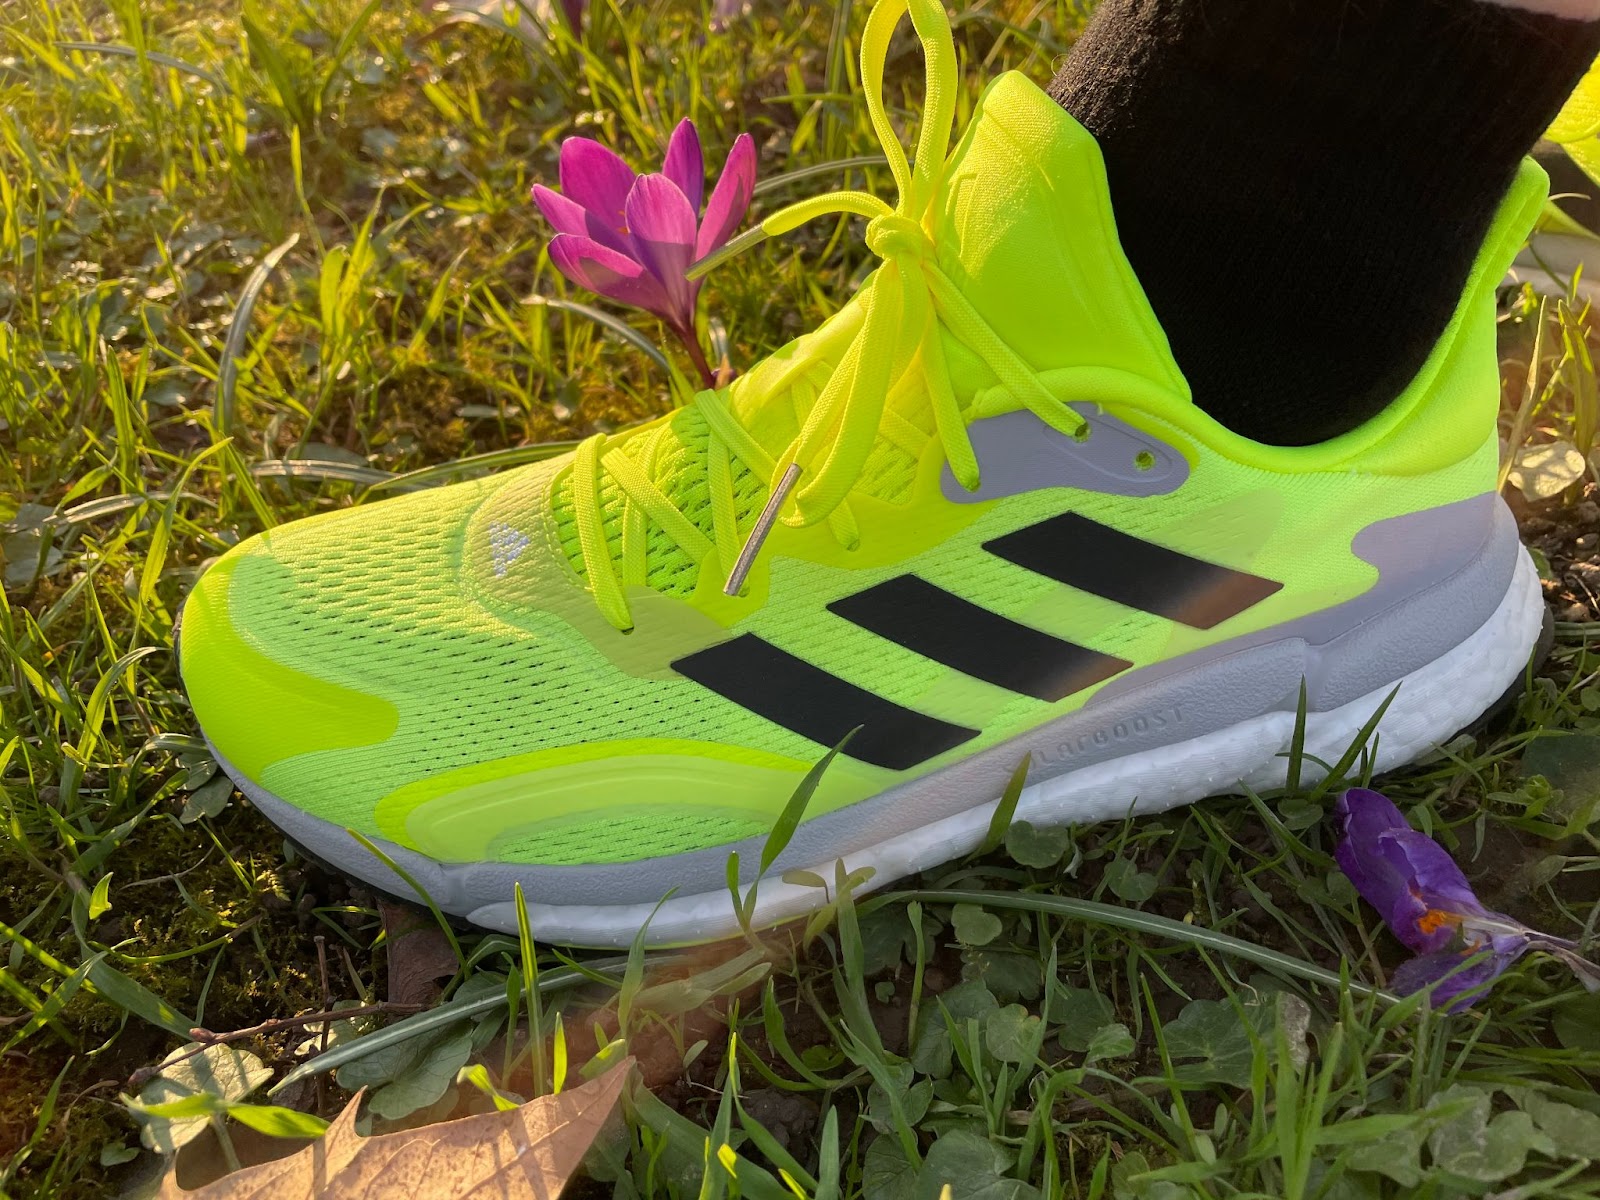 Road Trail Run: Testbericht: adidas Solarboost 3 - Ein stabiler Schuh!  (German)